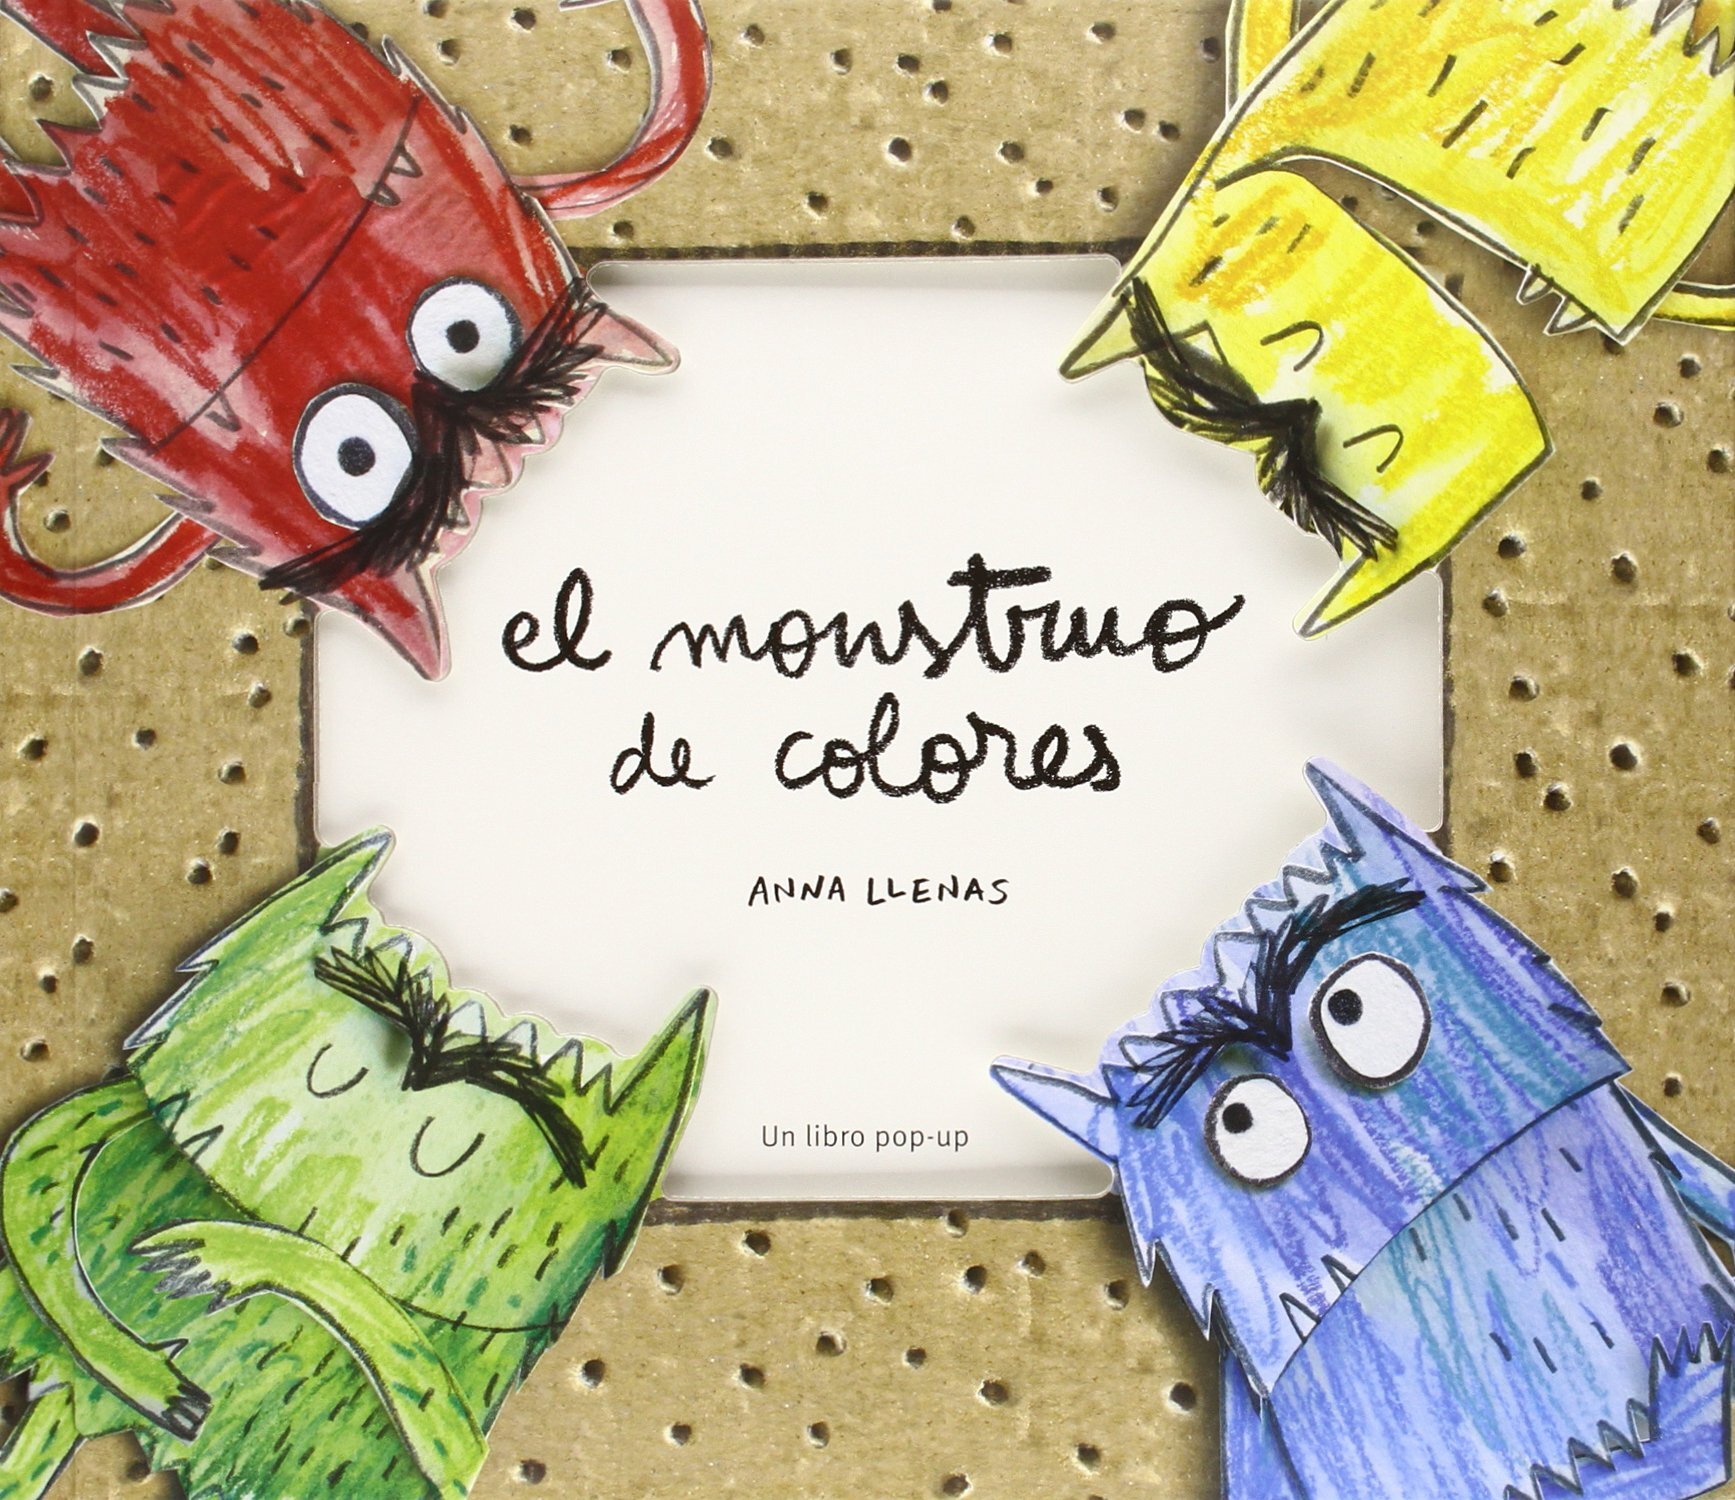 Libros Para Bebés: Libros para bebés (Libros para niños de 2 años - Libro  para colorear números, colores y formas) : Un libro para colorear formas,  colores y números para niños de